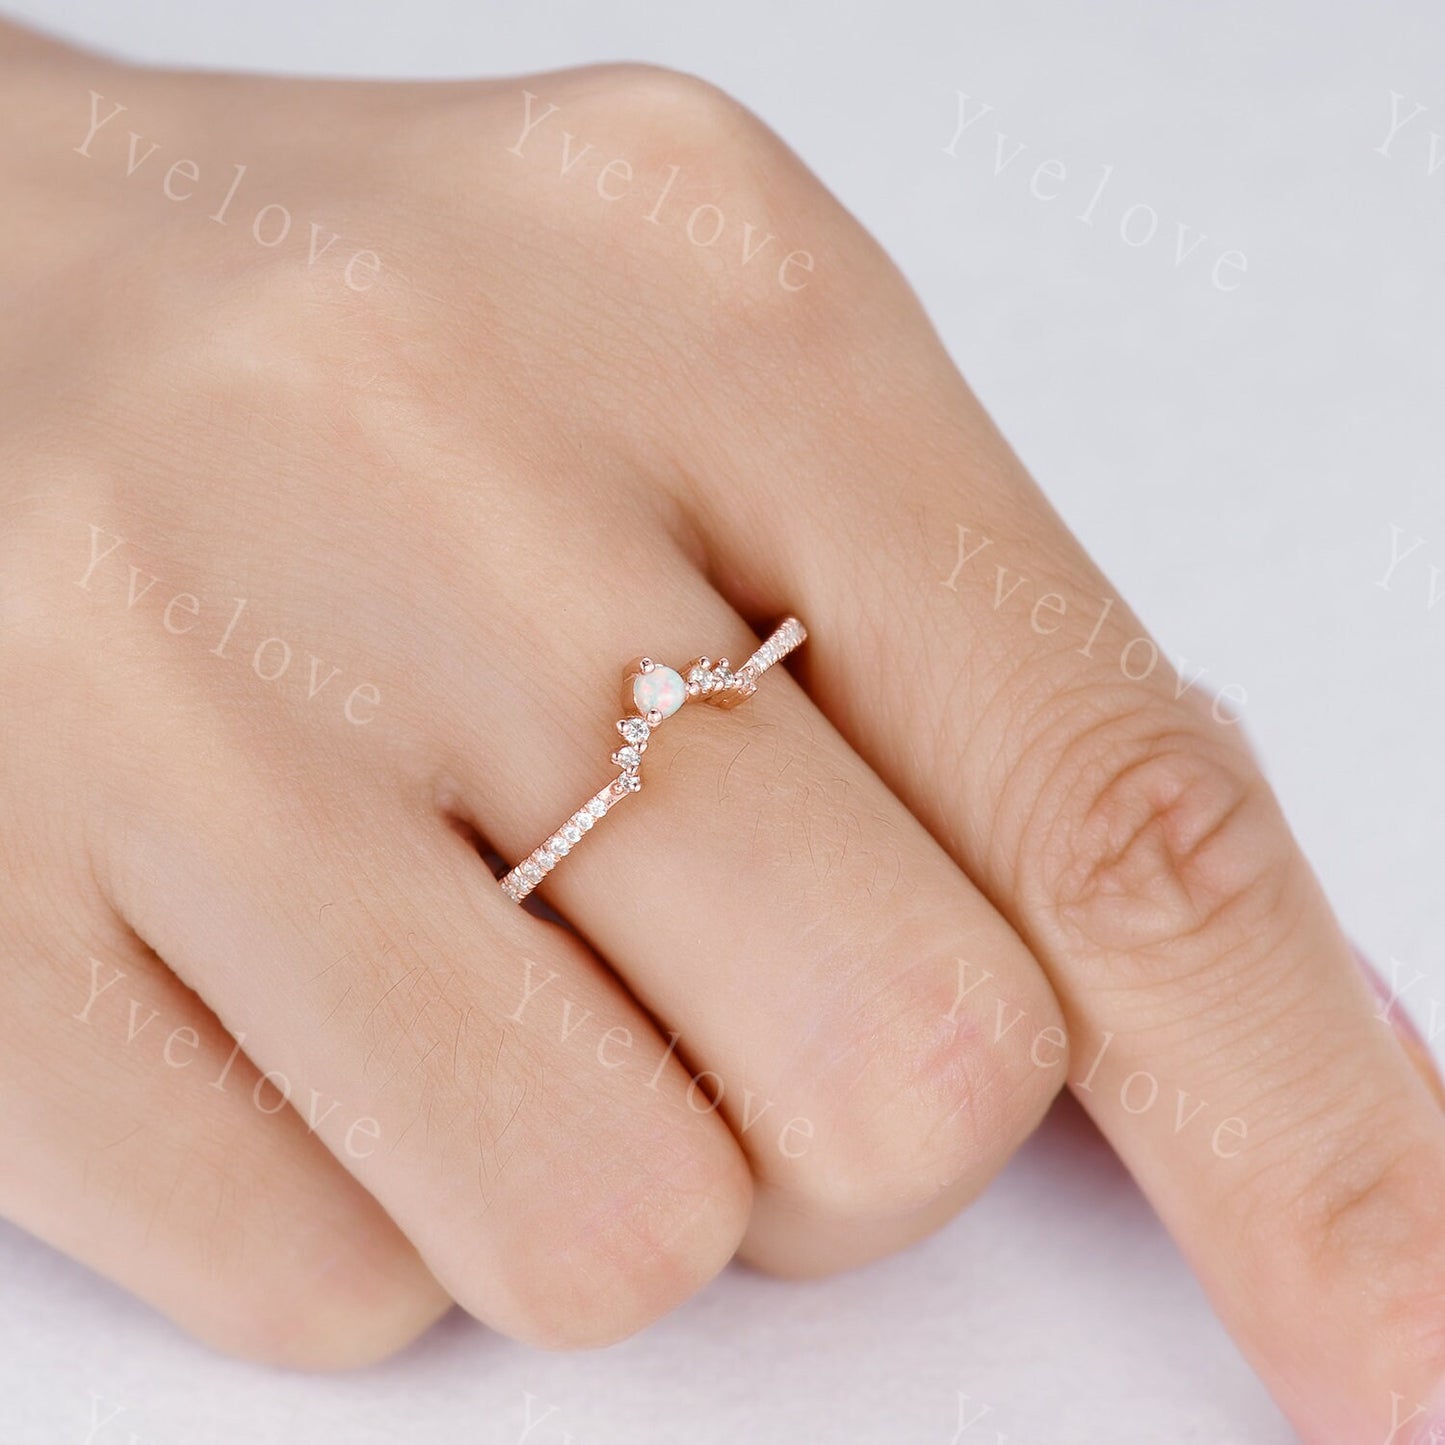 White Opal Stacking Band,Opal Wedding Ring, Curved Matching Band, Dainty Opal Ring,White Opal and Diamond Ring, 14K Rose Gold Opal Ring Set